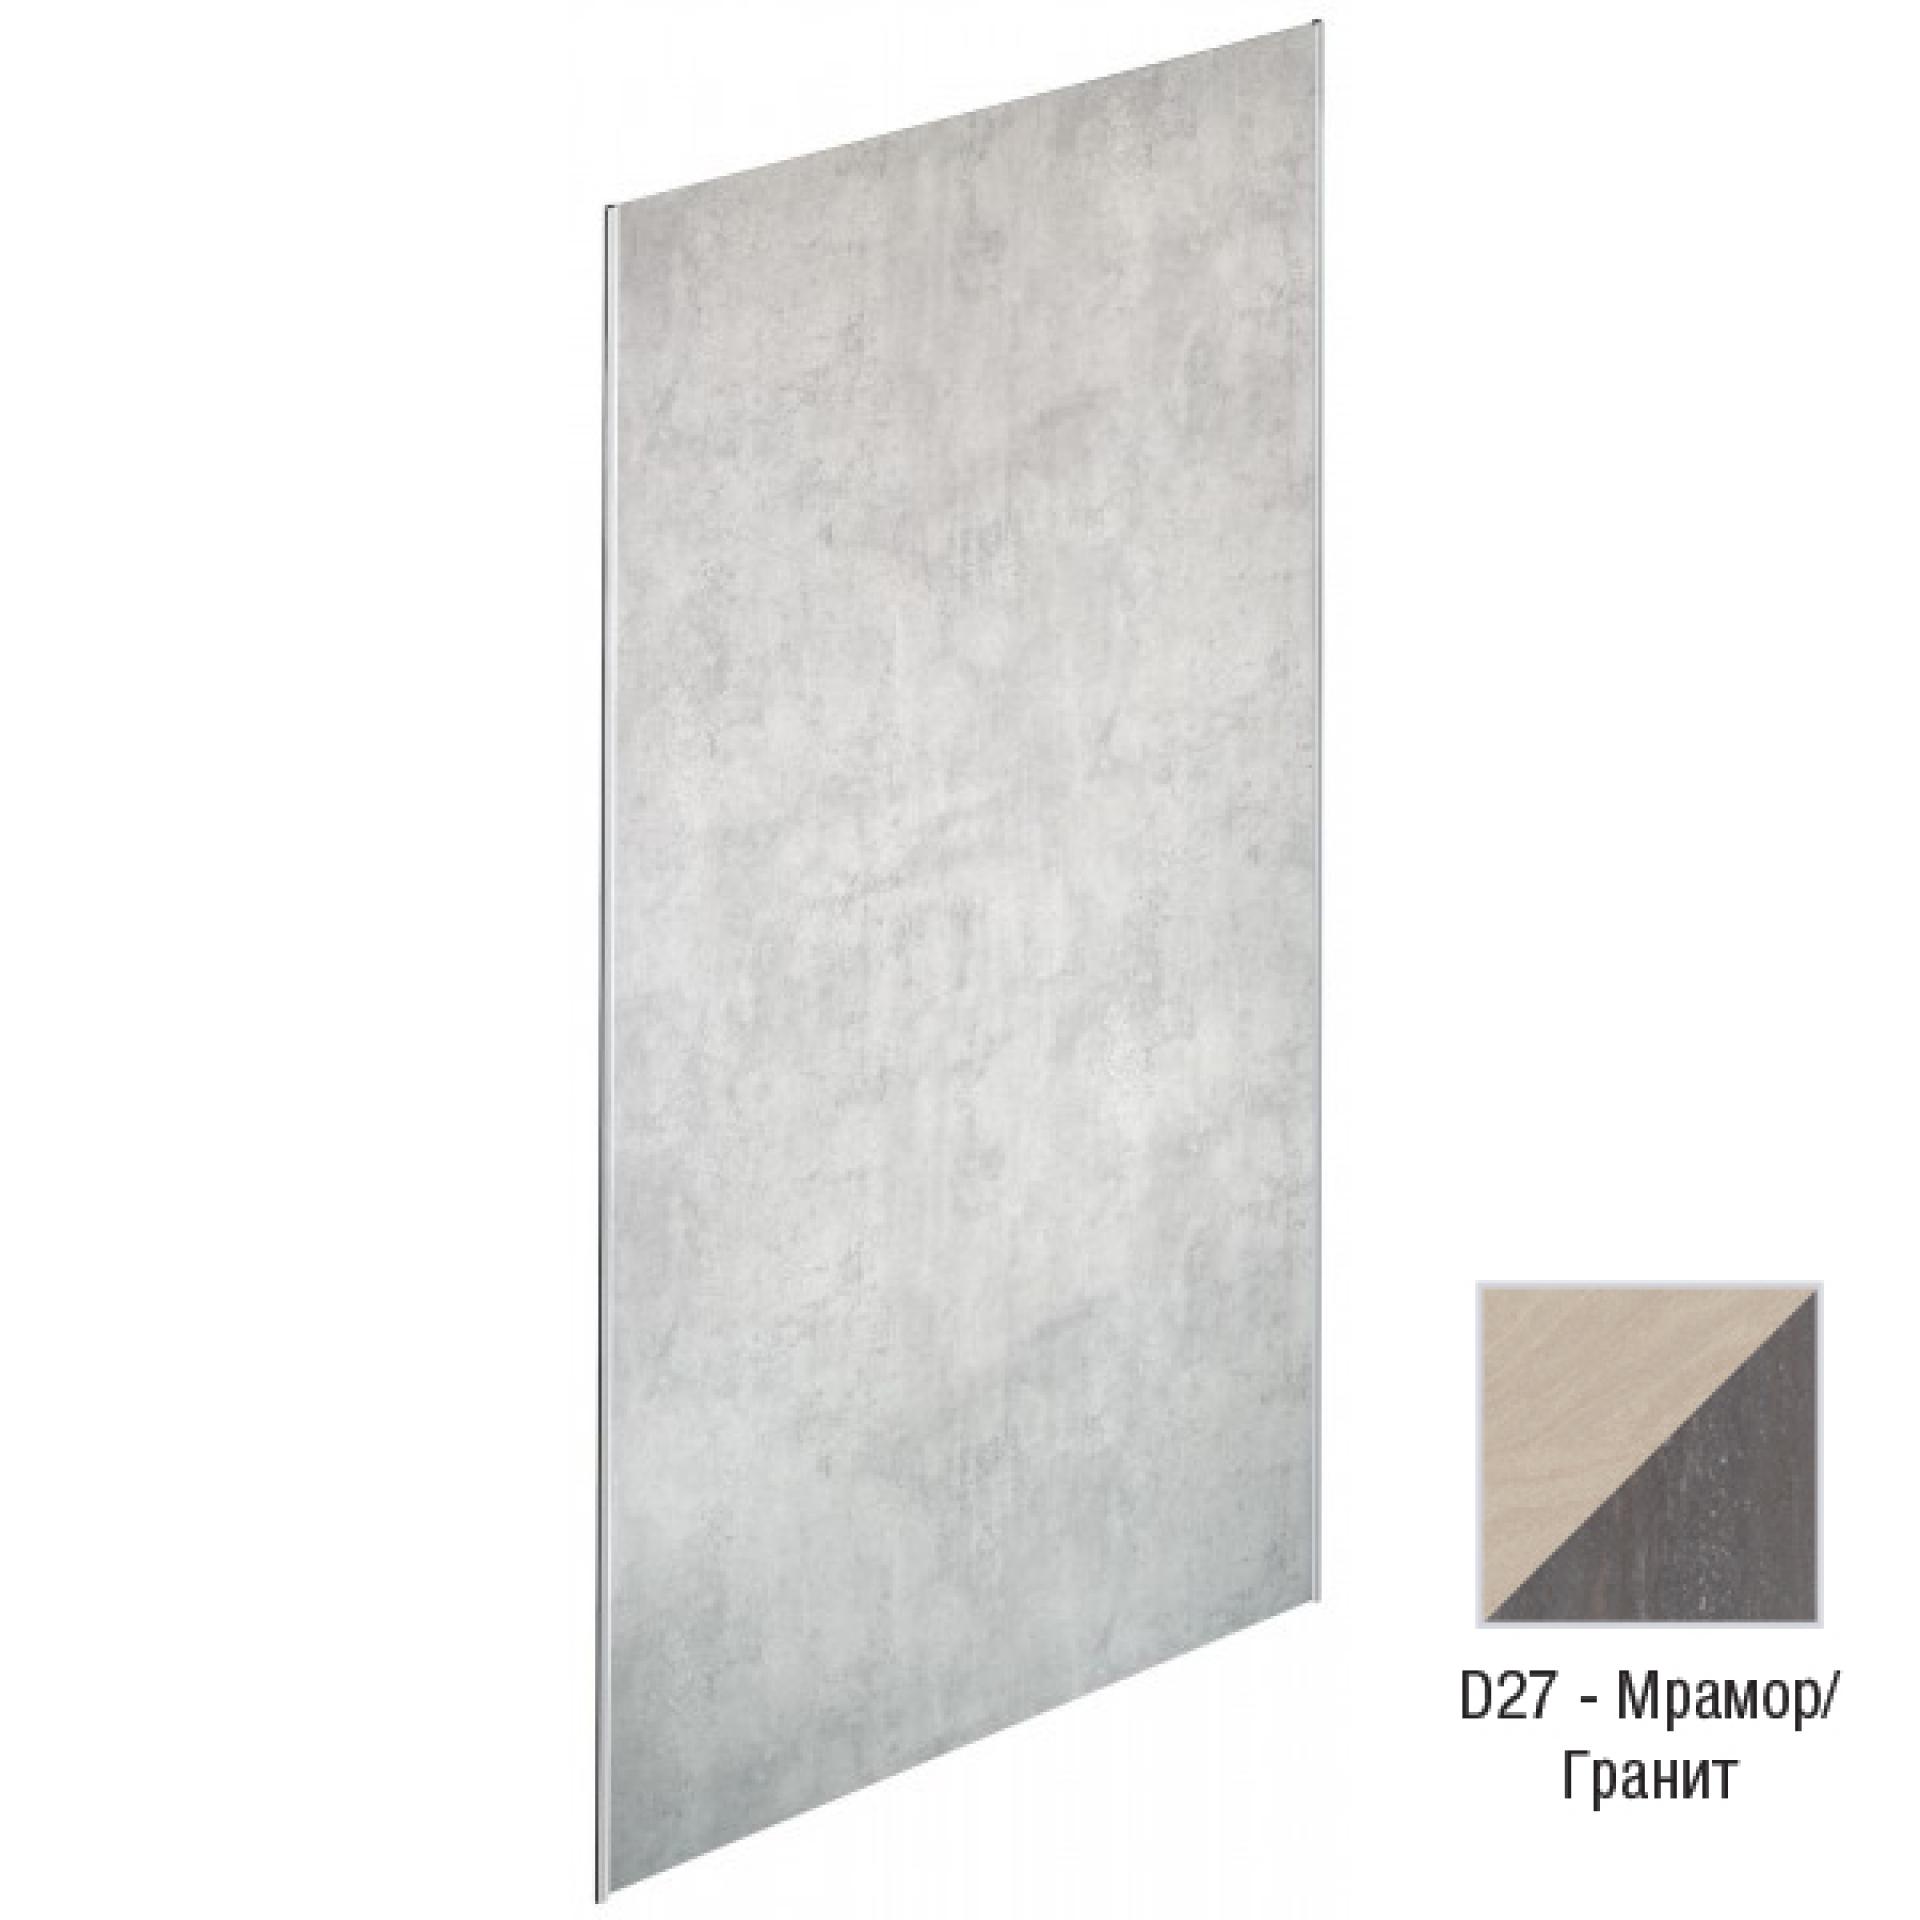 Декоративная панель для душевого пространства Jacob Delafon Panolux E63030-D27, мрамор/гранит